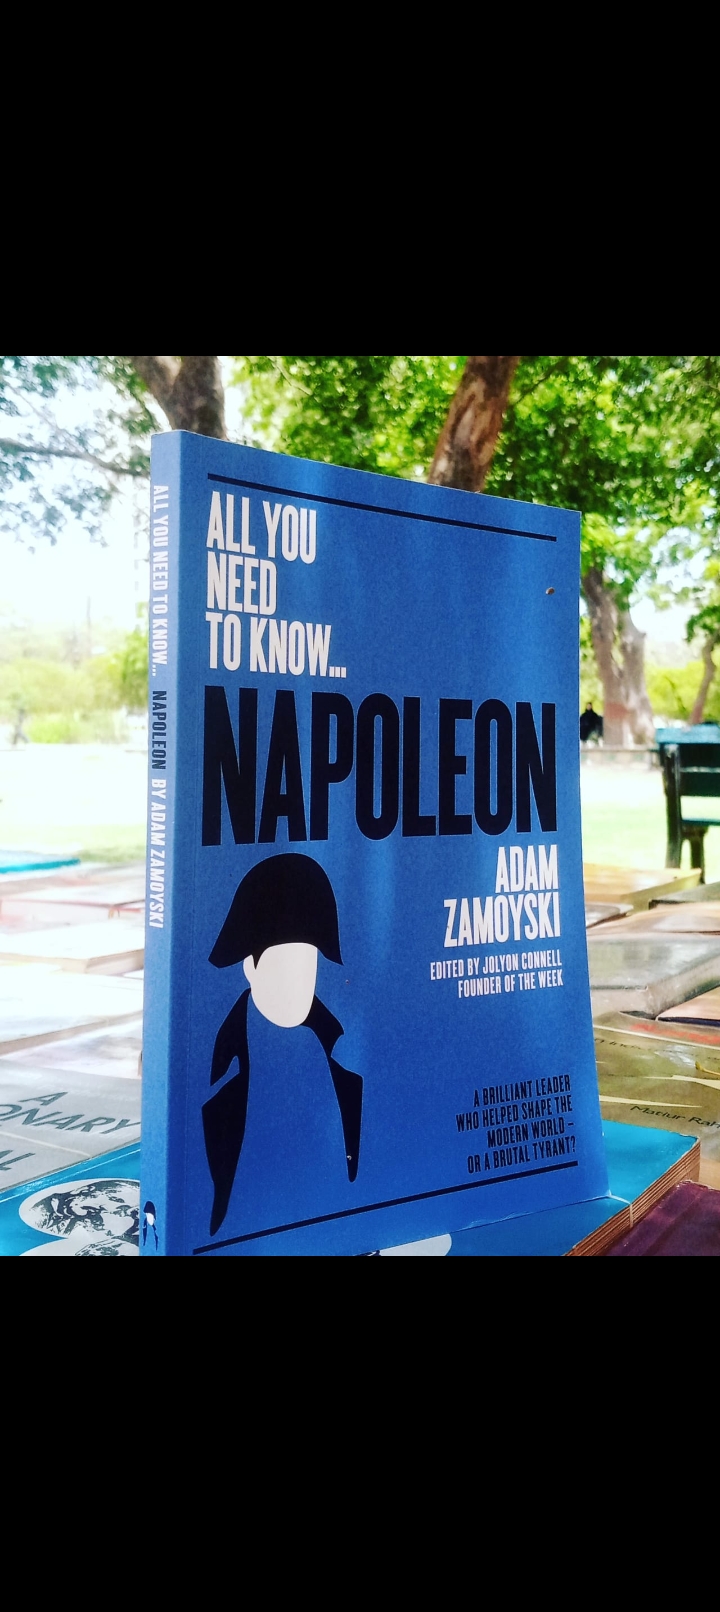 all you need to know napoleon by adam zamoyski. original new paperback